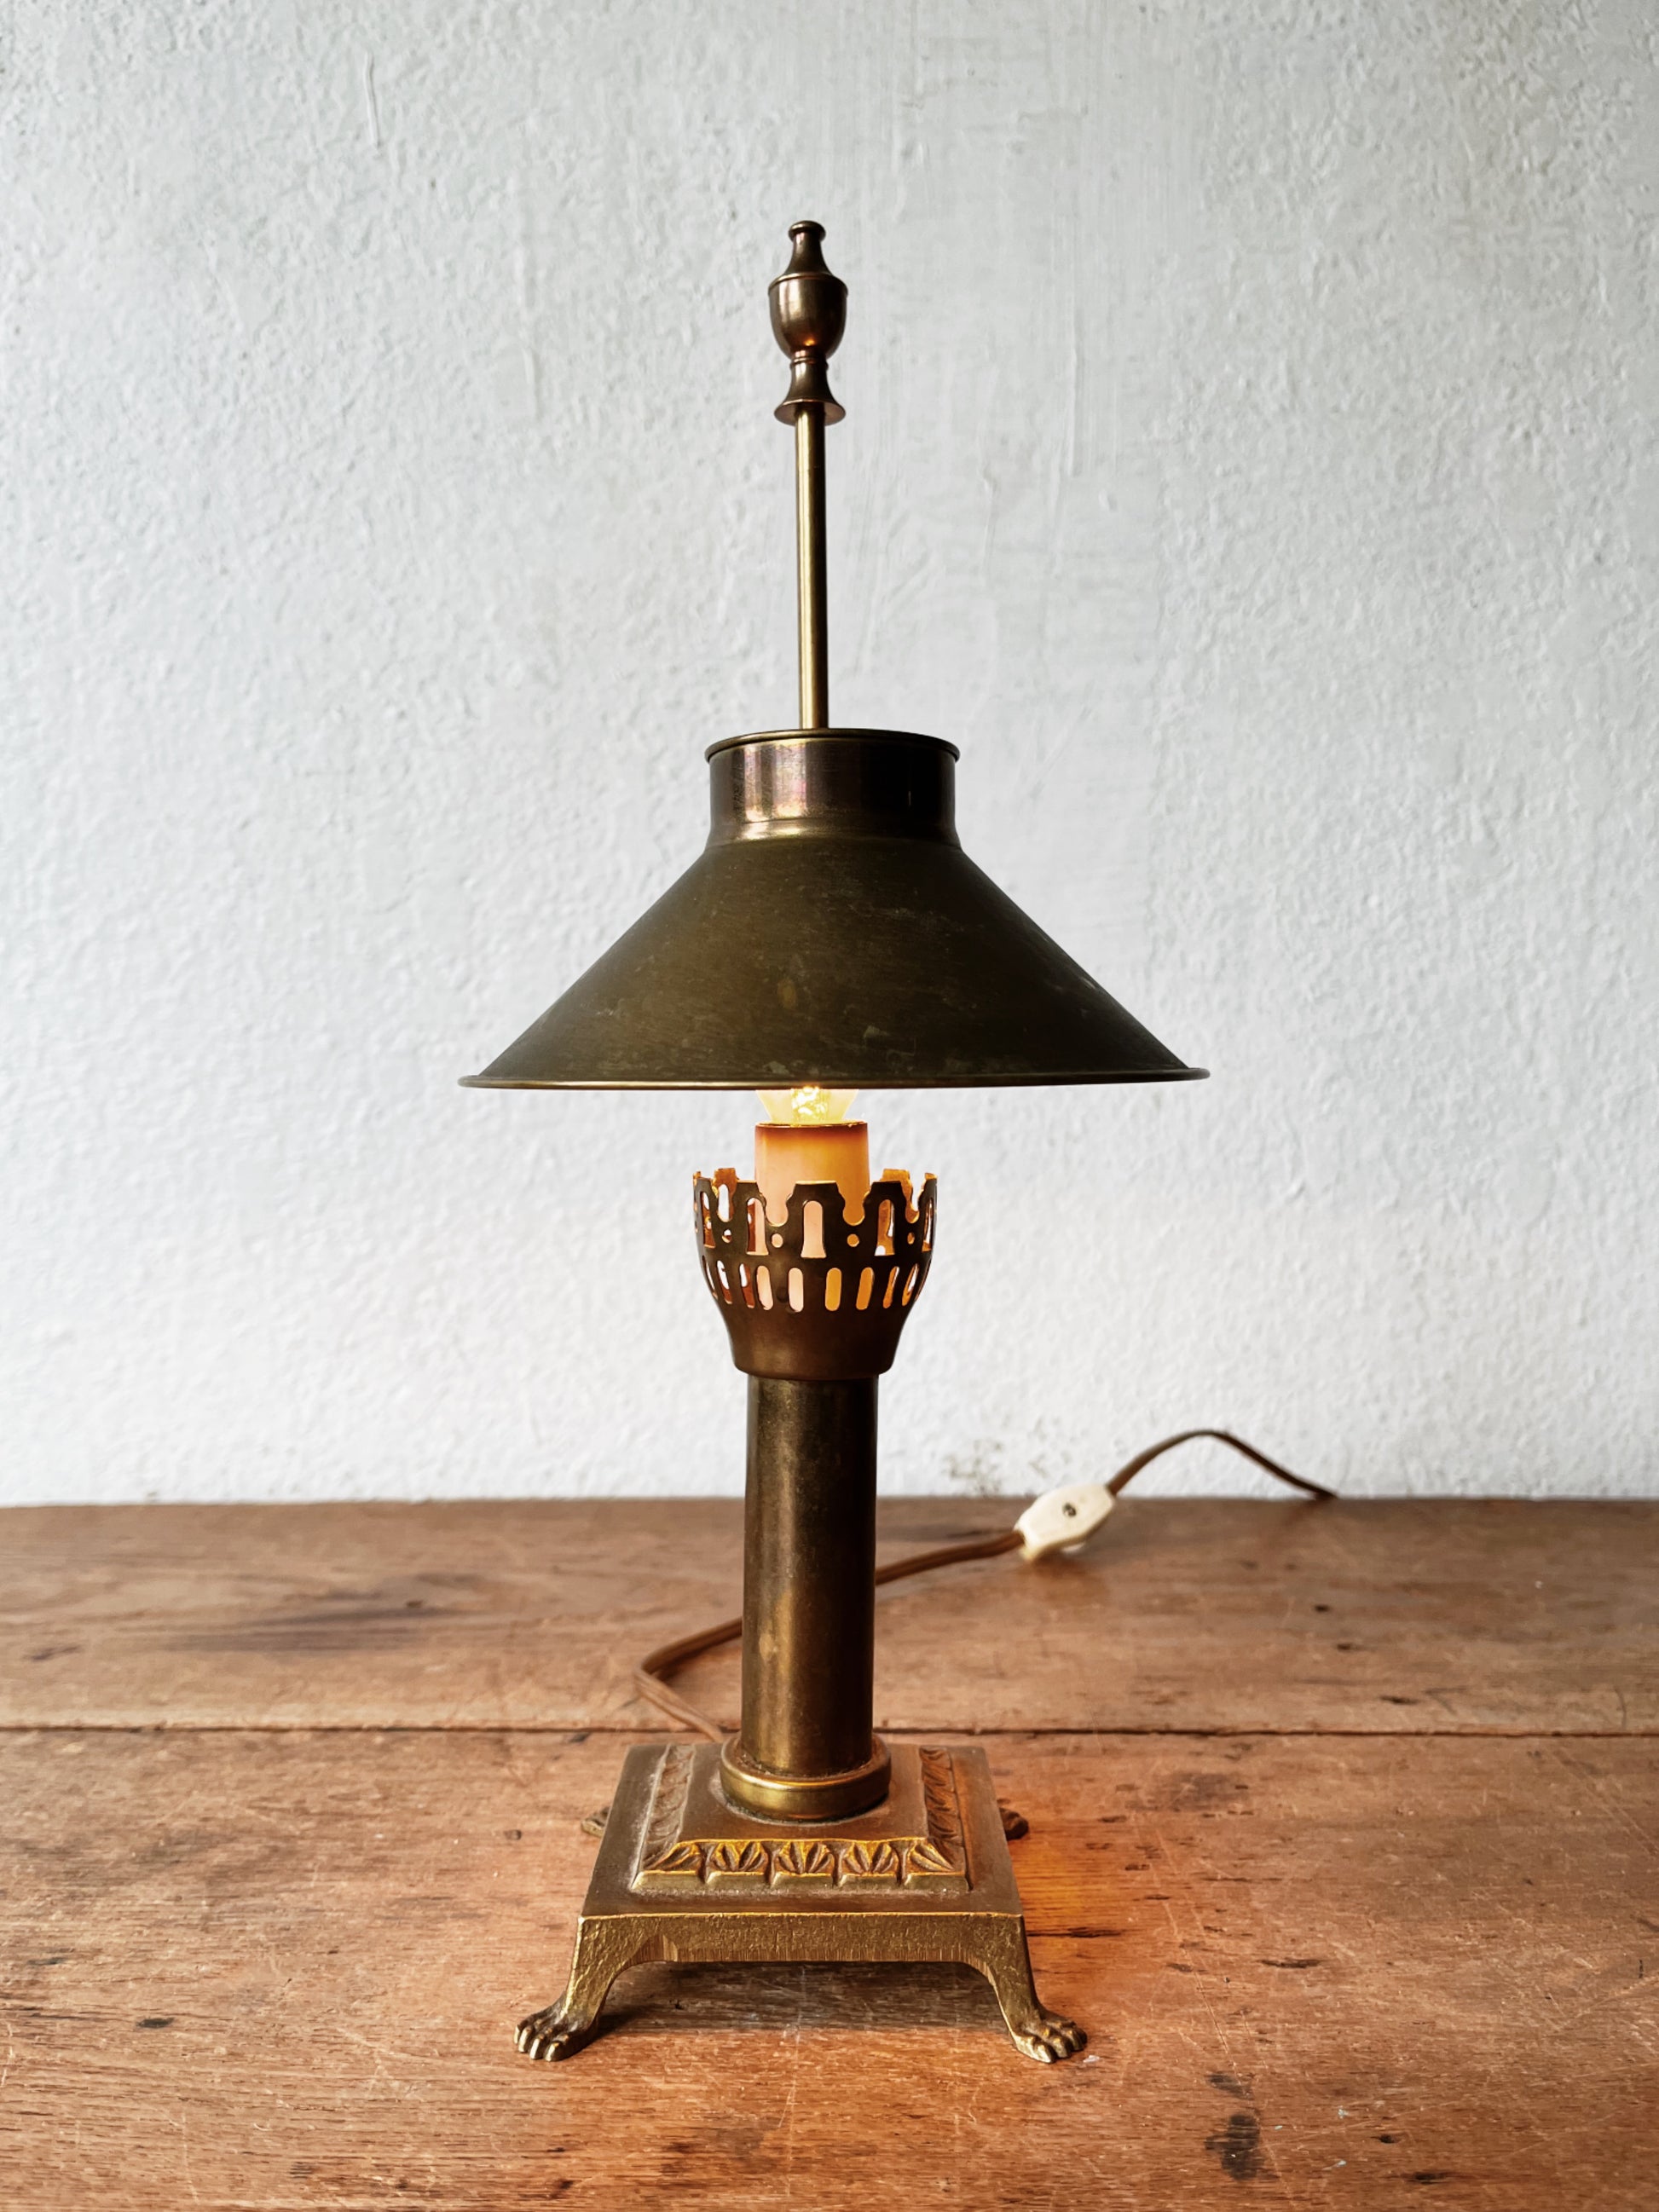 PARIS ORIENT EXPRESS ~ Small Brass Desk Lamp